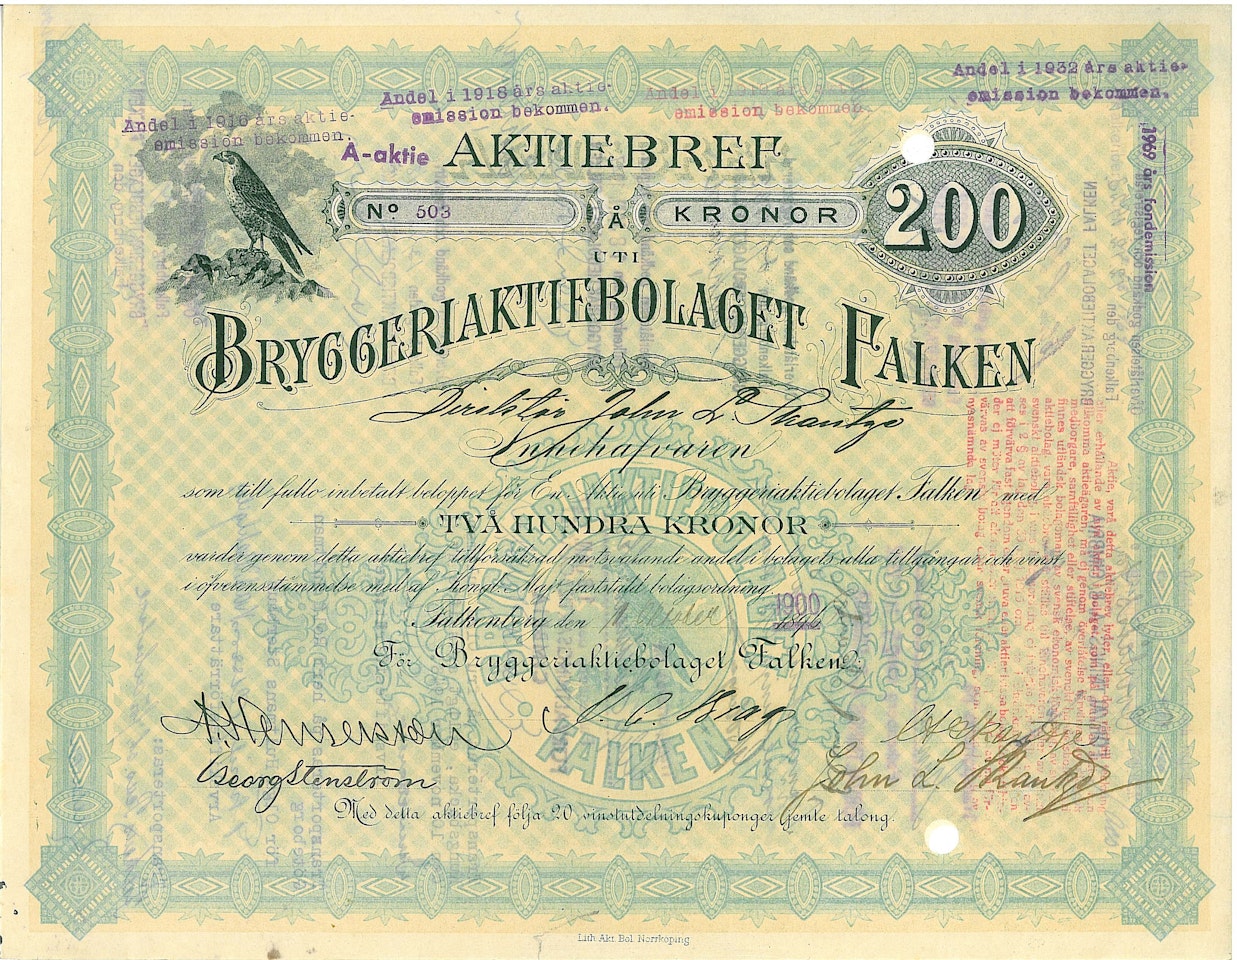 Bryggeri AB Falken, 1900